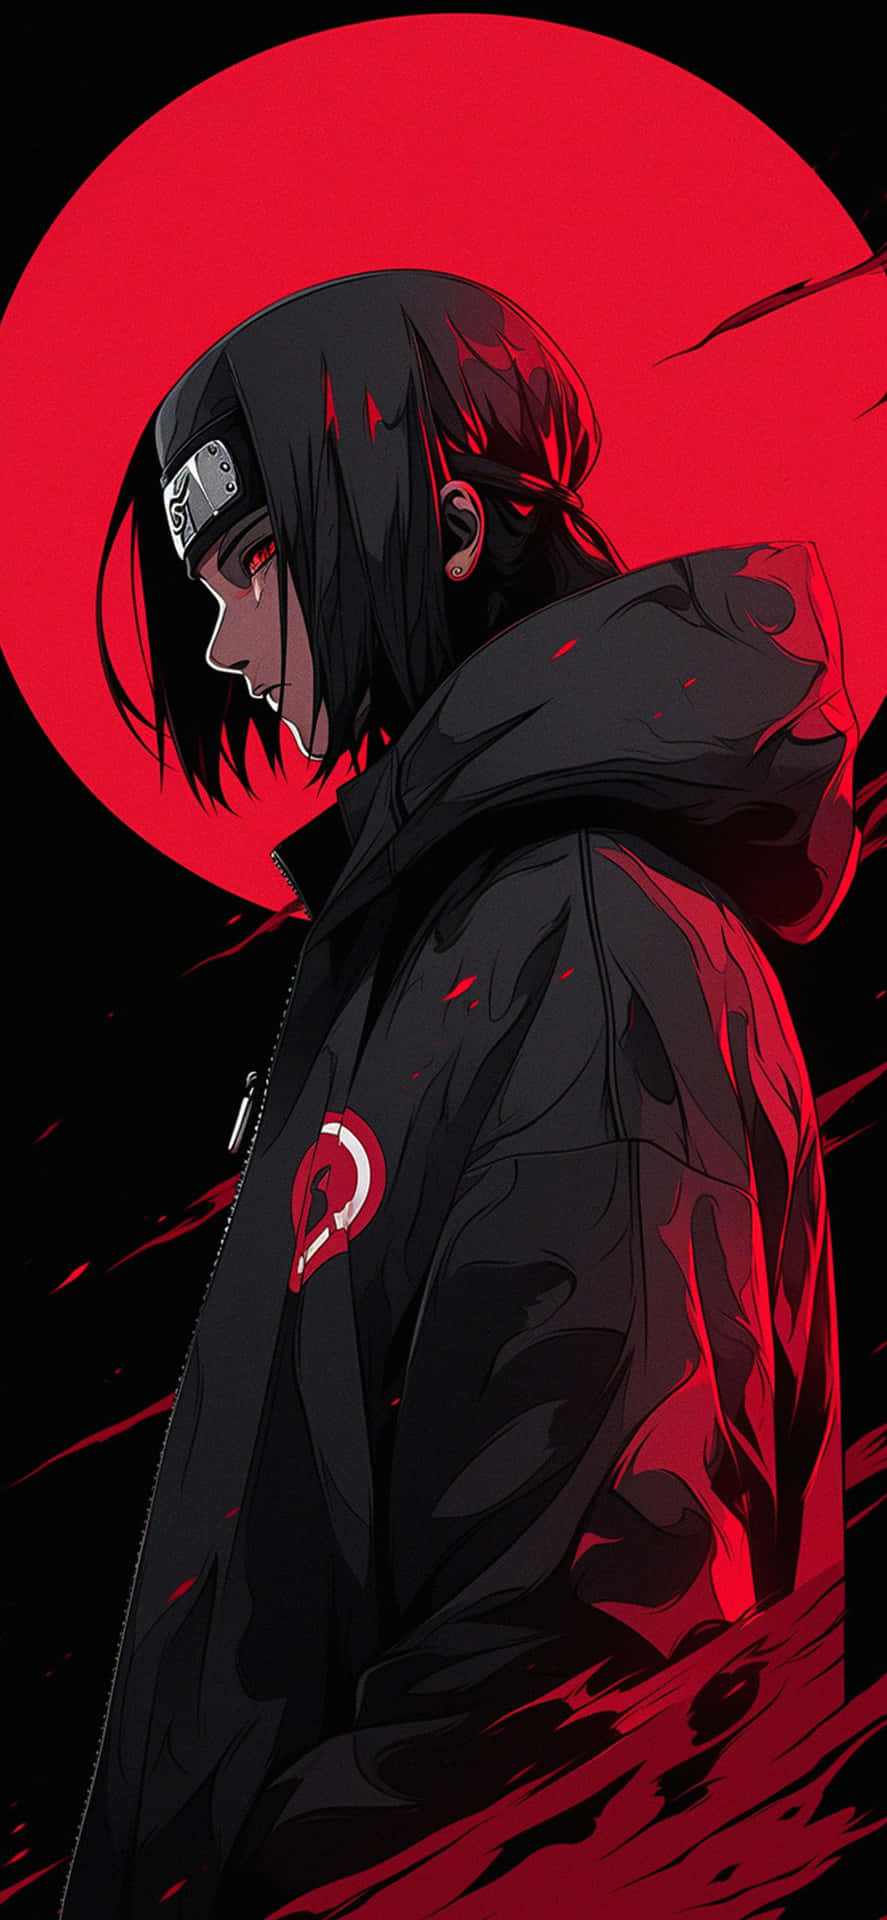 Naruto Character Red Moon Backdrop.jpg Wallpaper